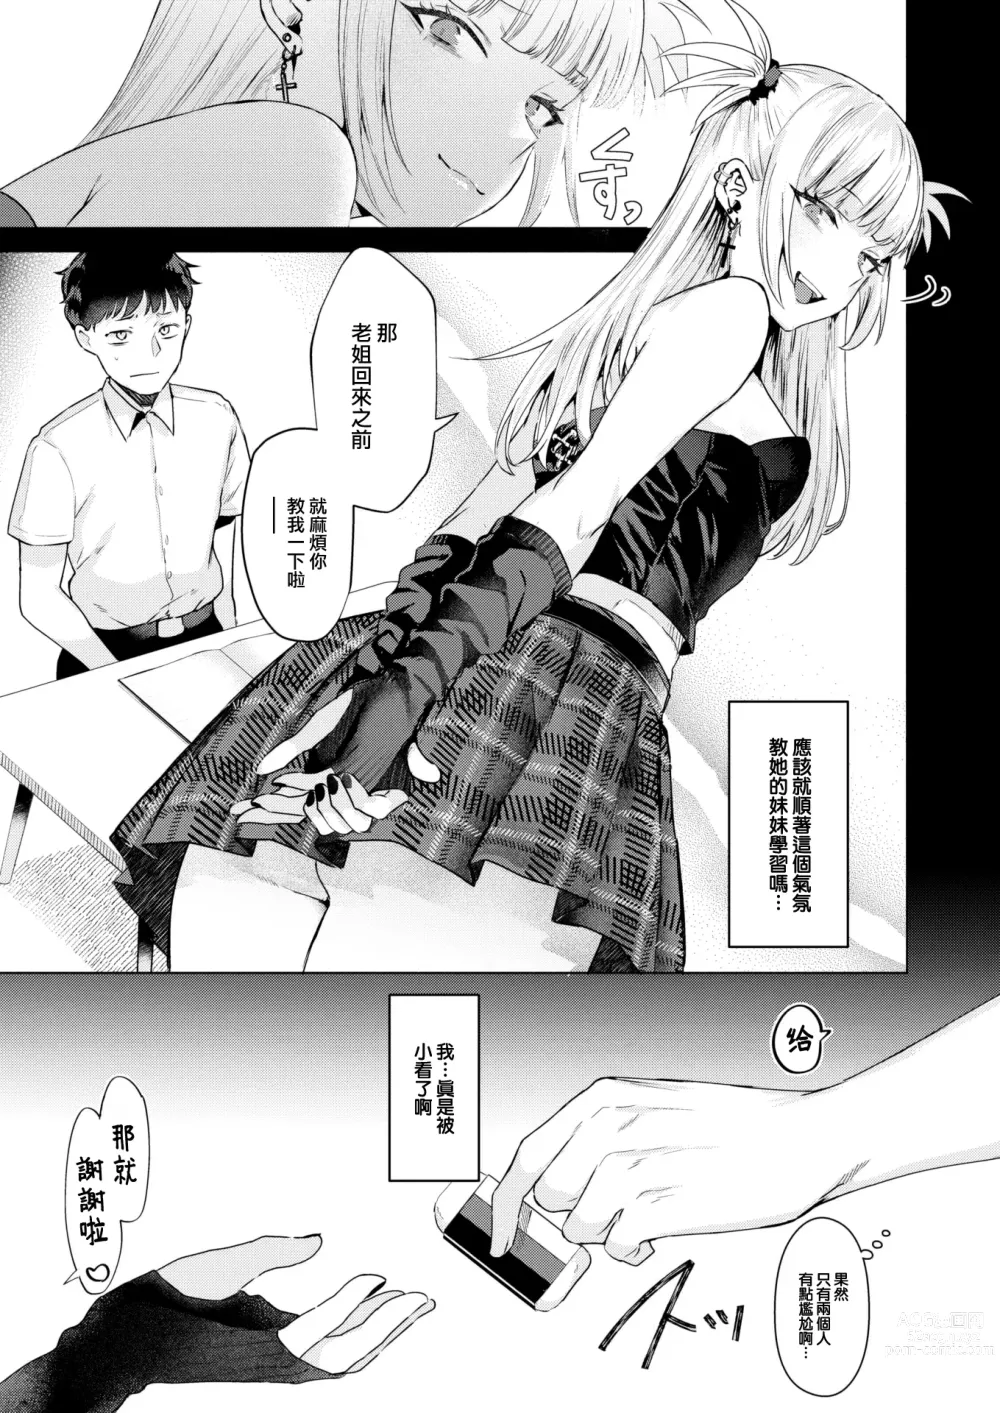 Page 6 of manga Kanojo no Imouto